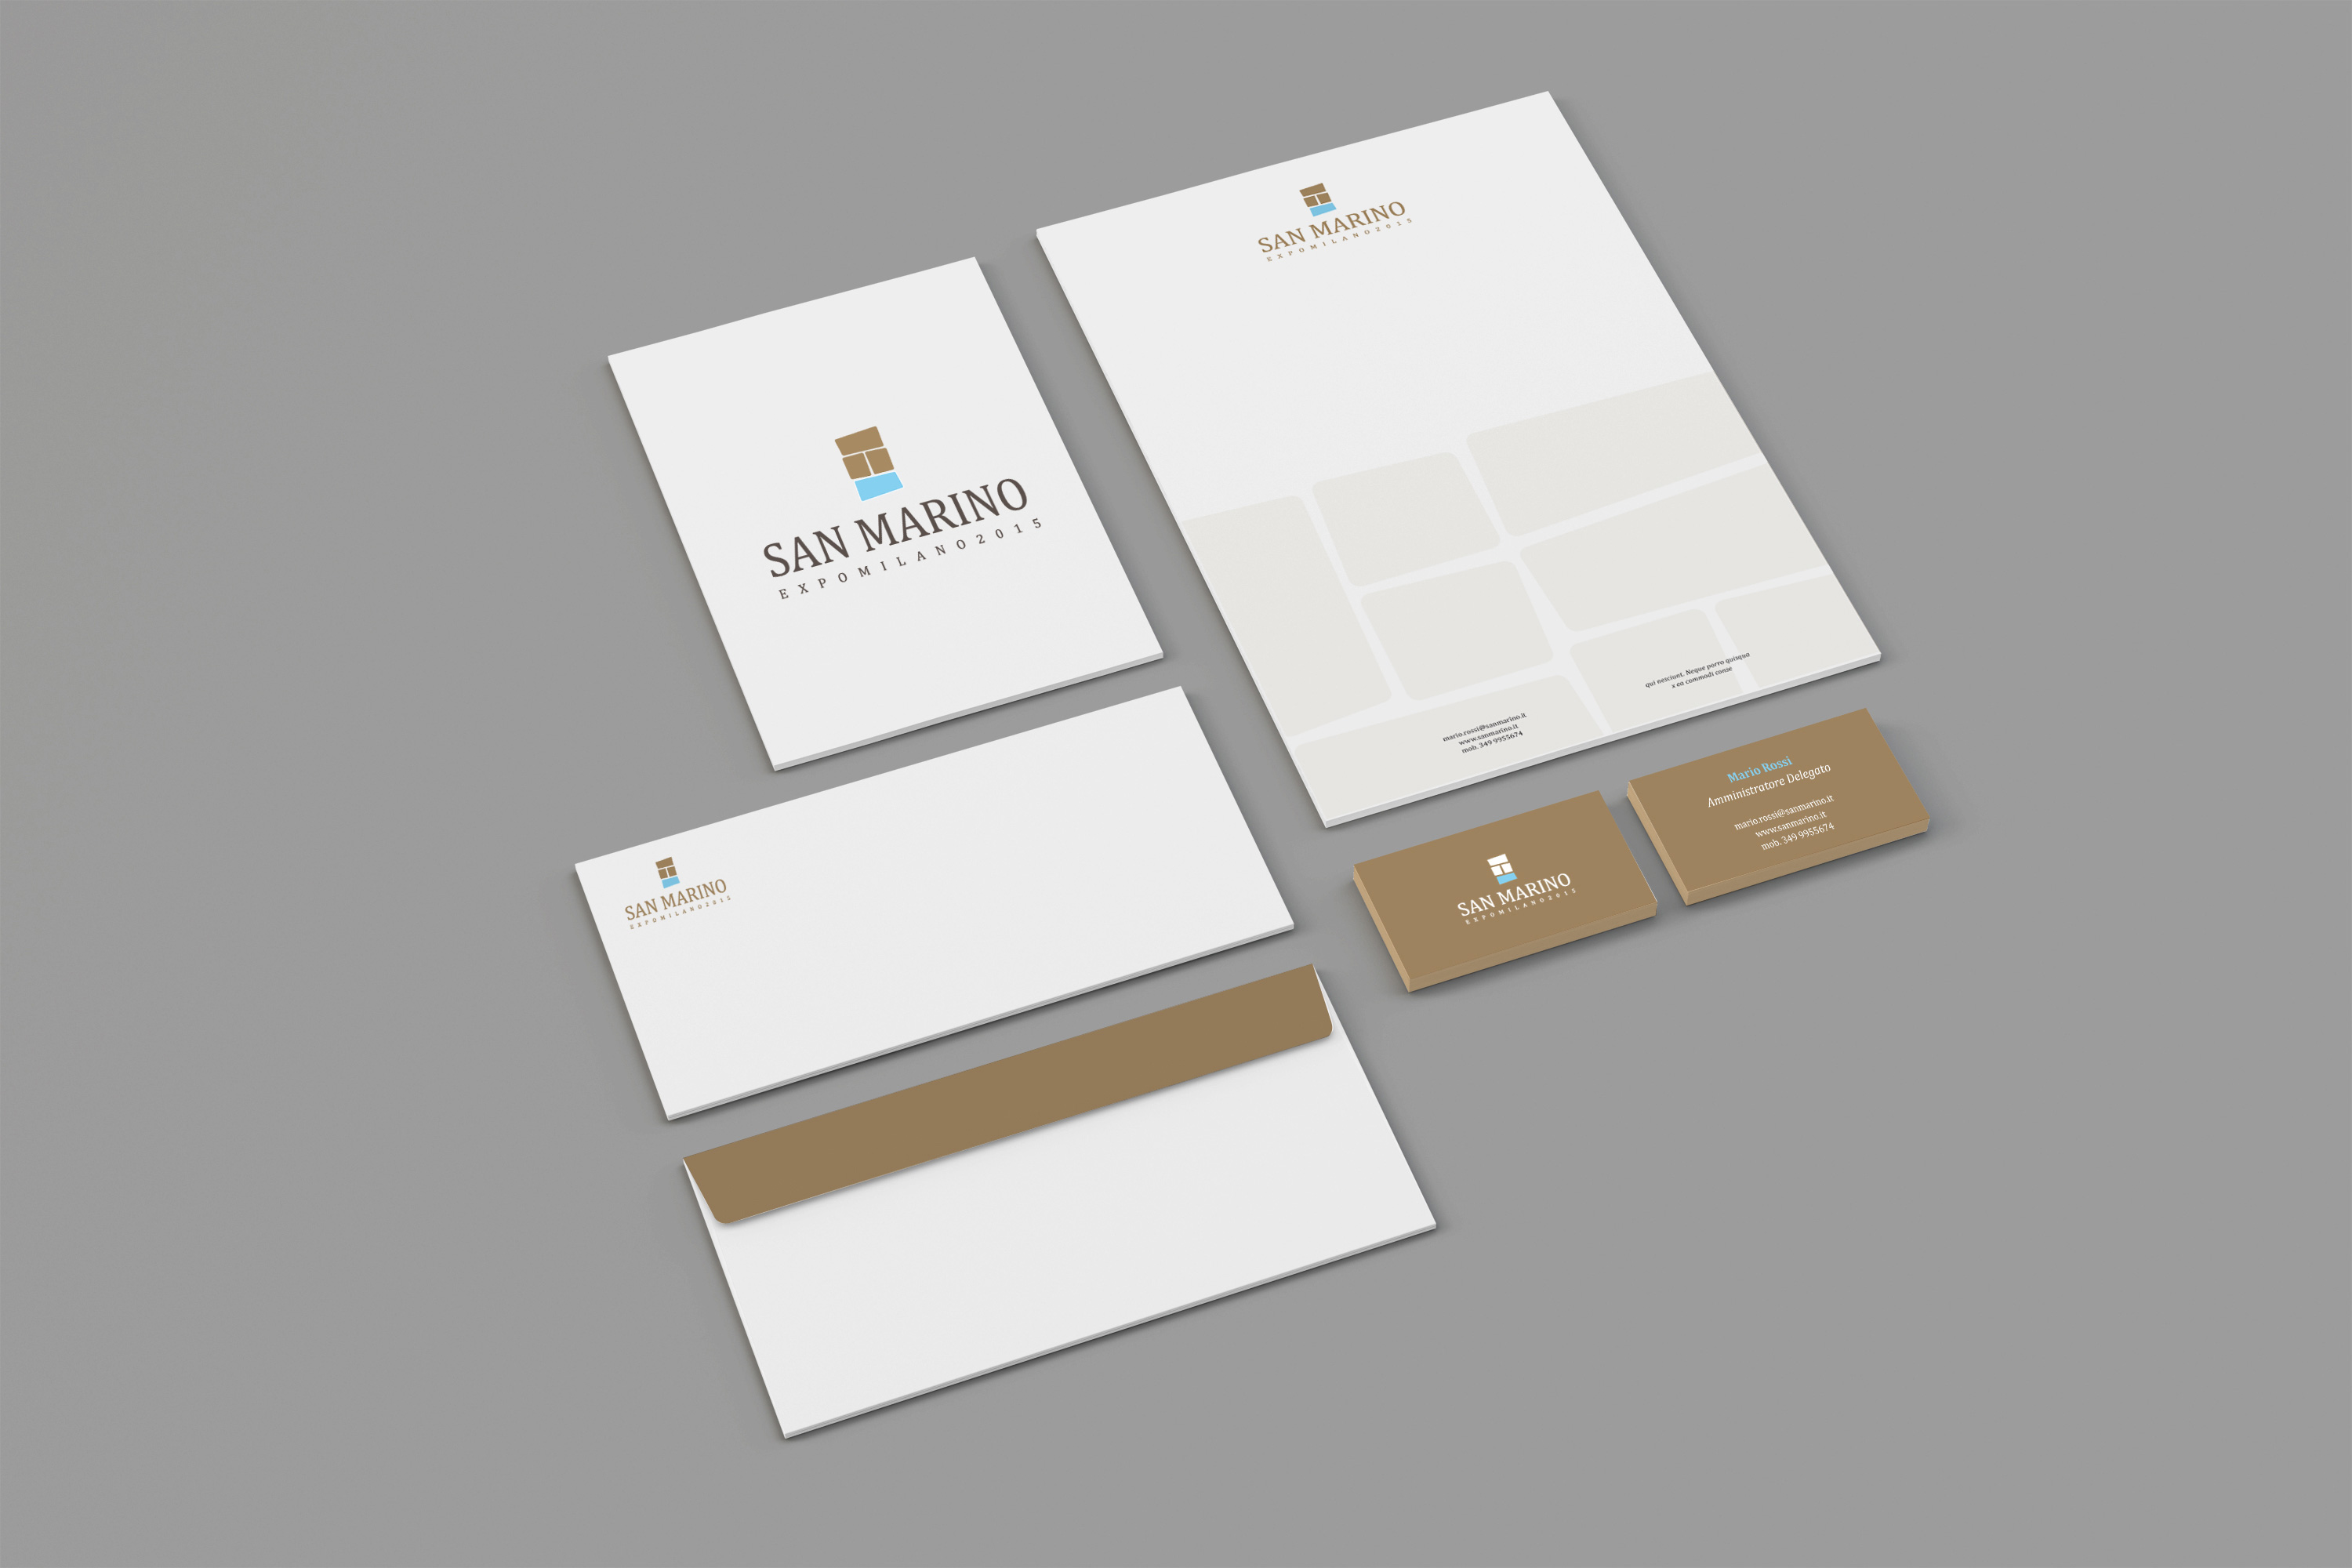 Progettazione stand e comunicazione per San Marino Expo 2015